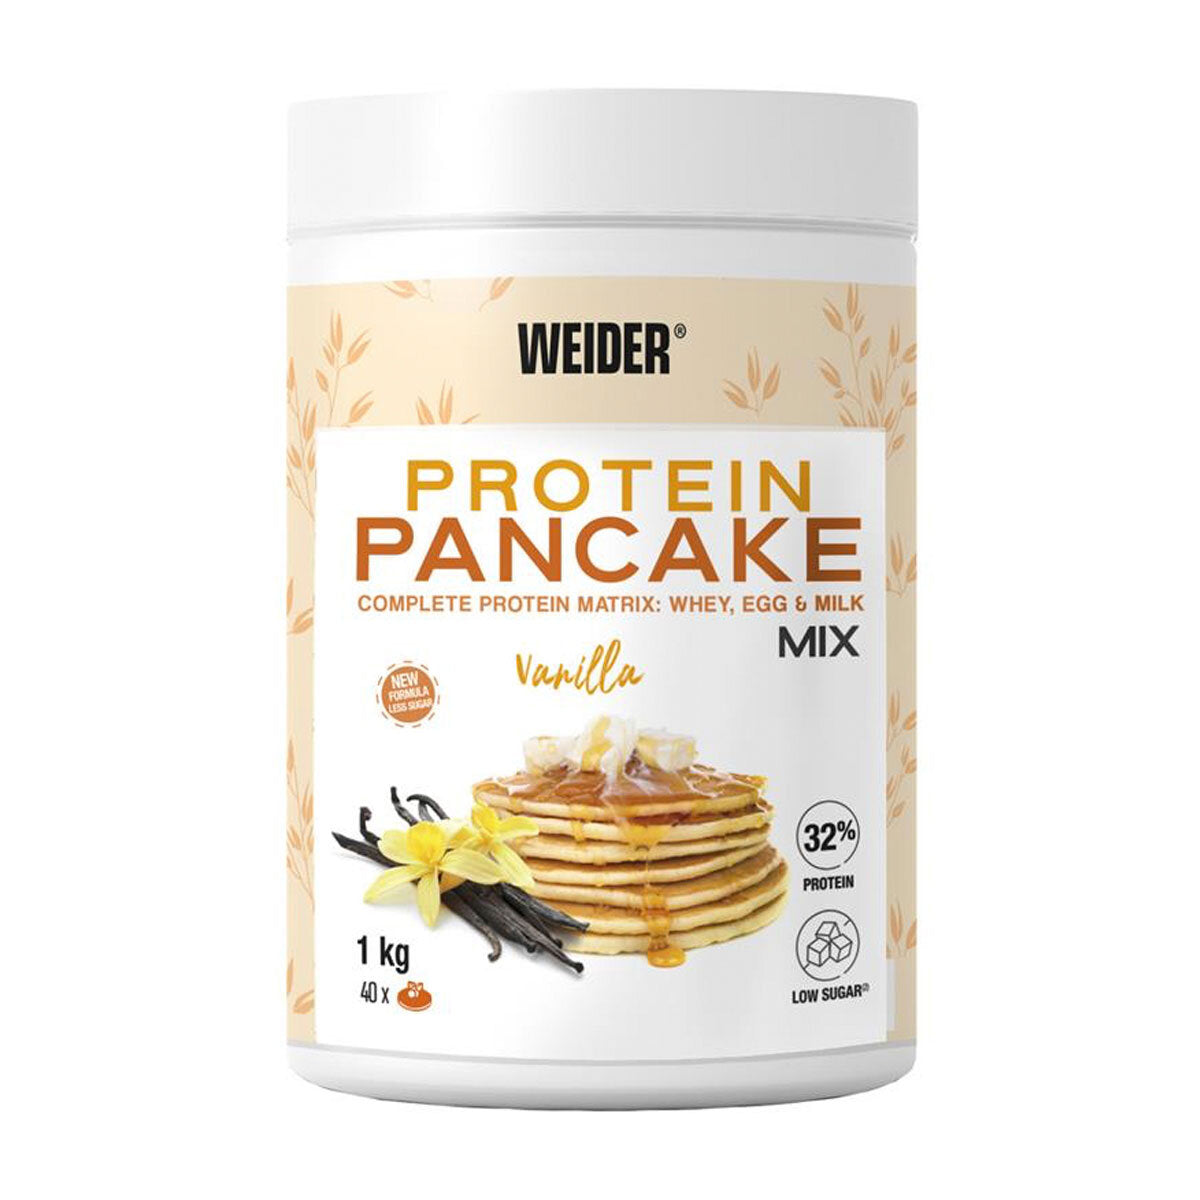 Weider Protein Pancake Mix in Vanilla, 1kg